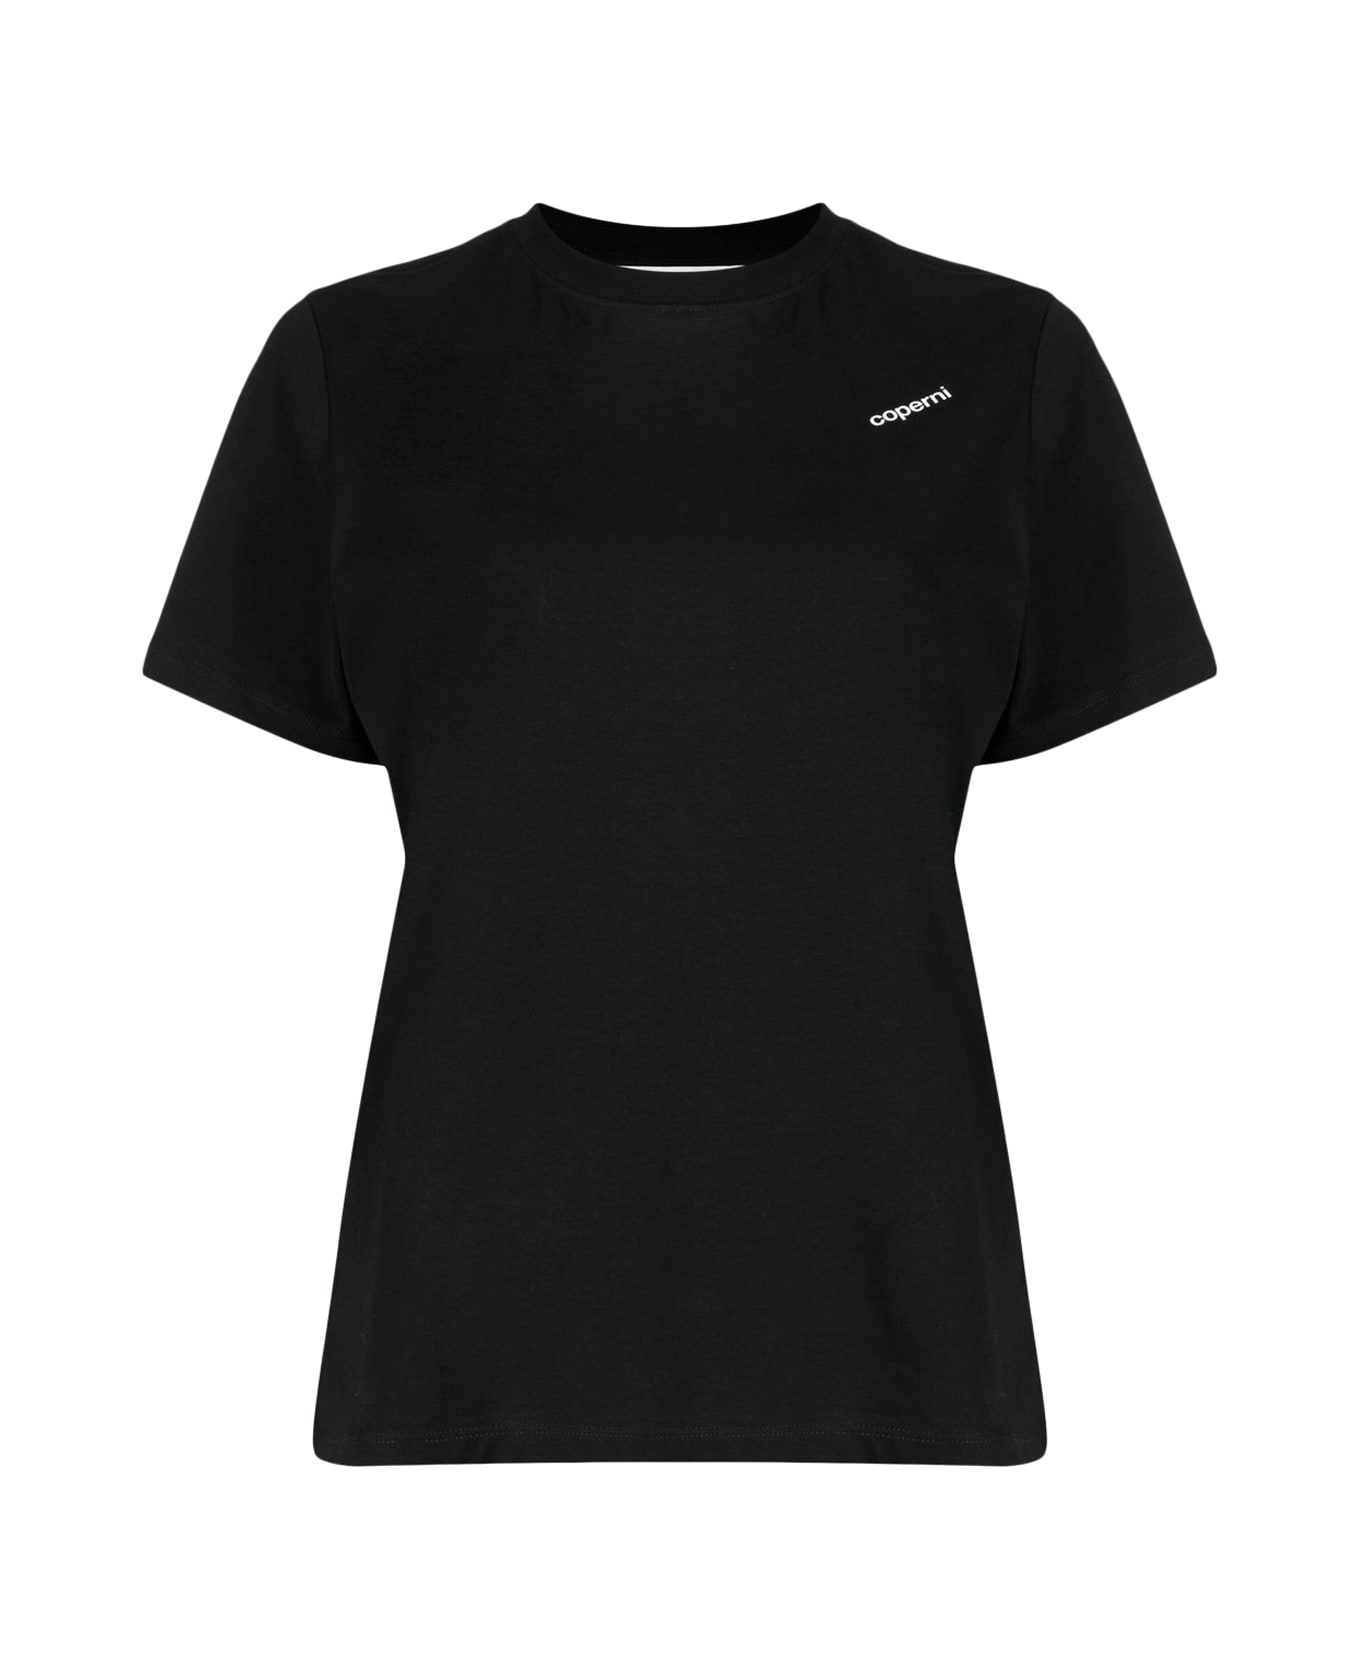 Coperni Logo Boxy T-shirt - Blk Black